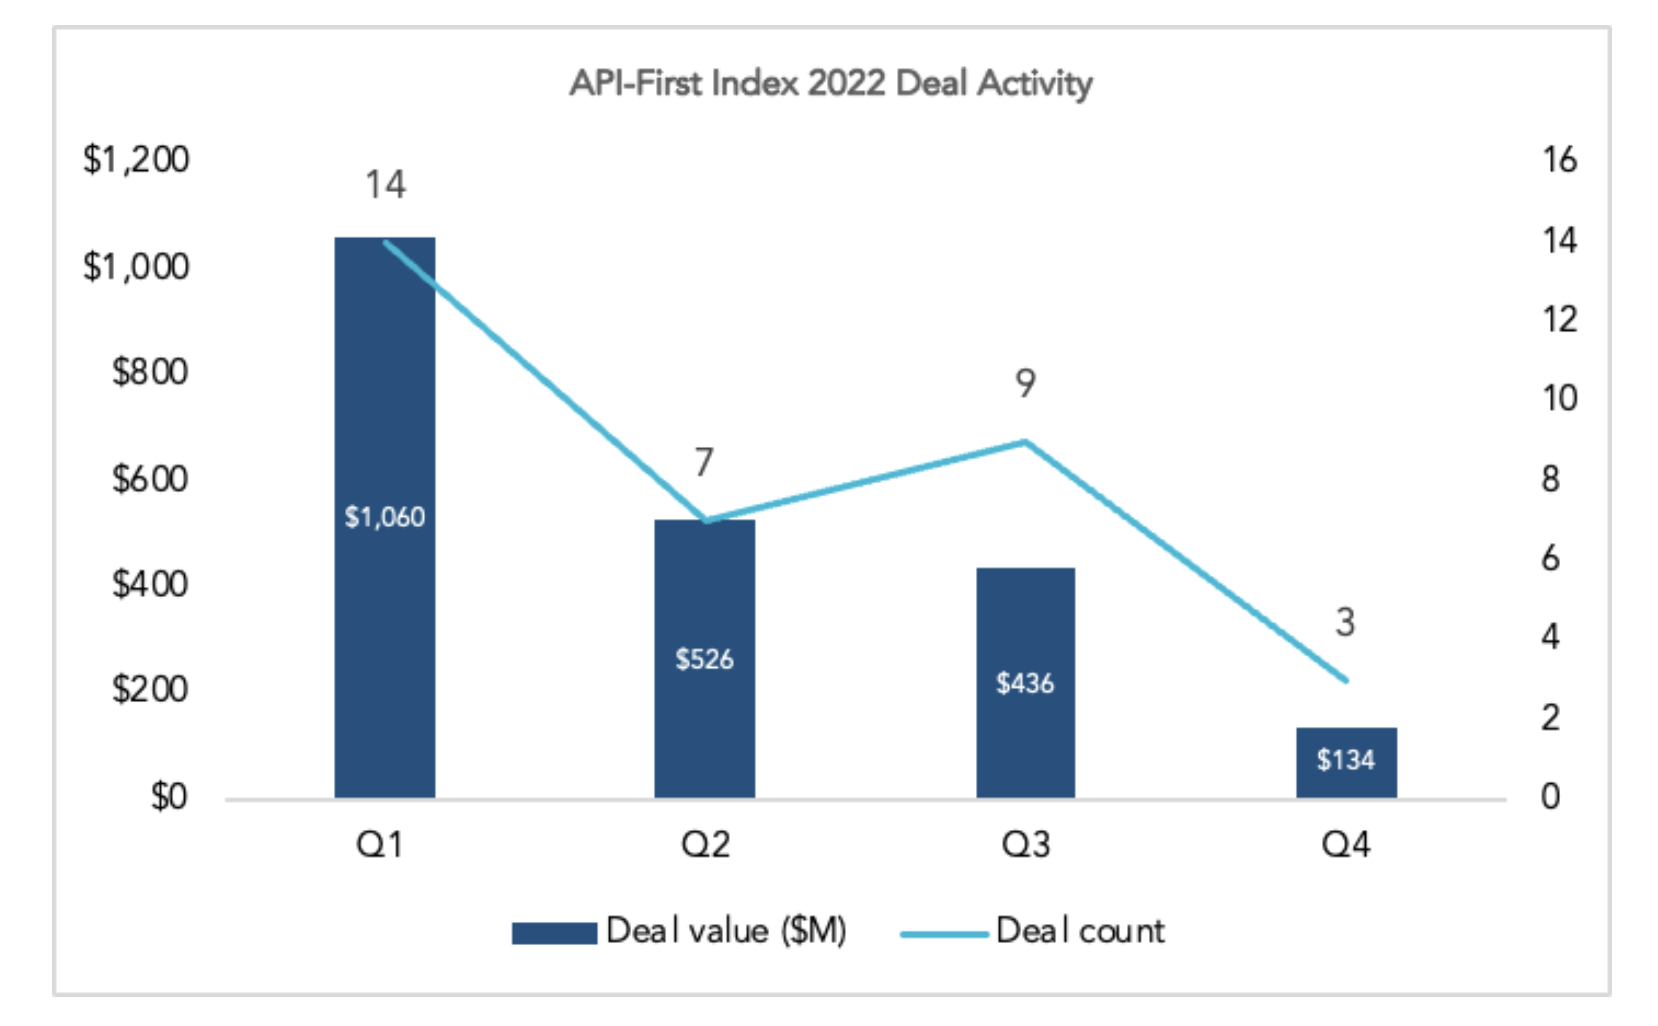 GGV API-first index 2022 deal activity